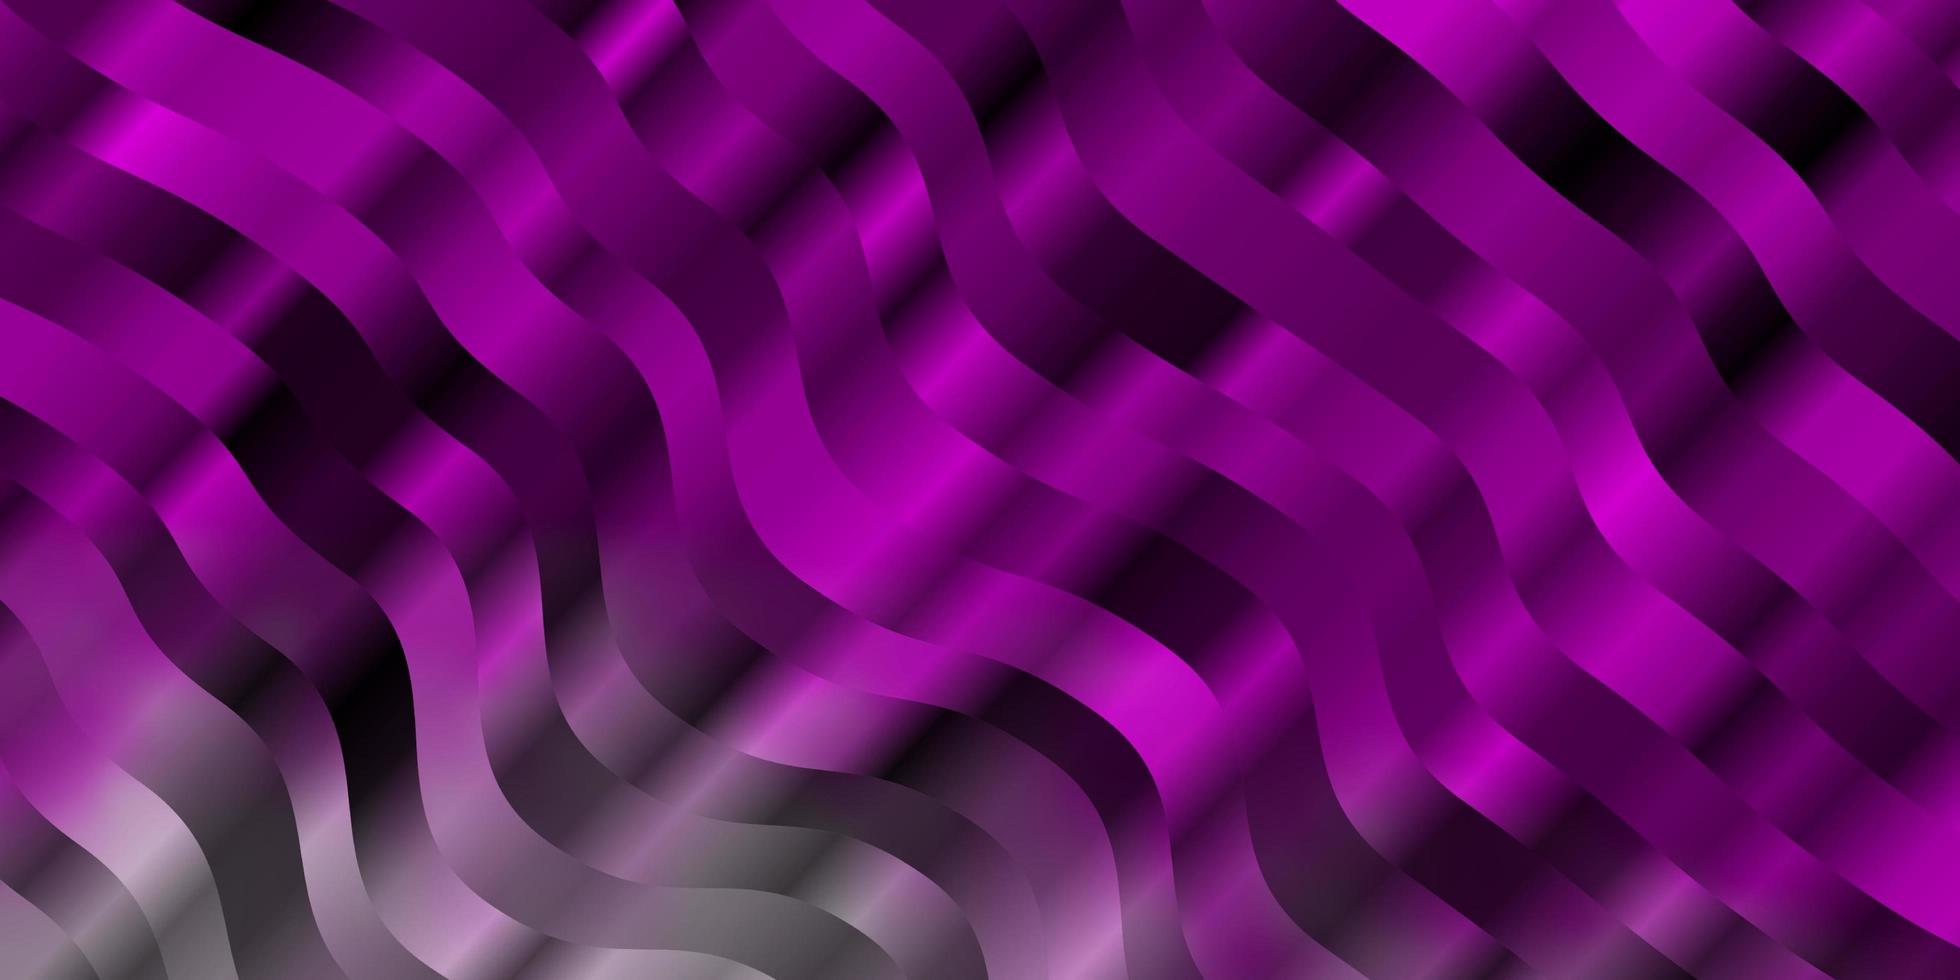 fond de vecteur violet clair, rose avec des lignes courbes.